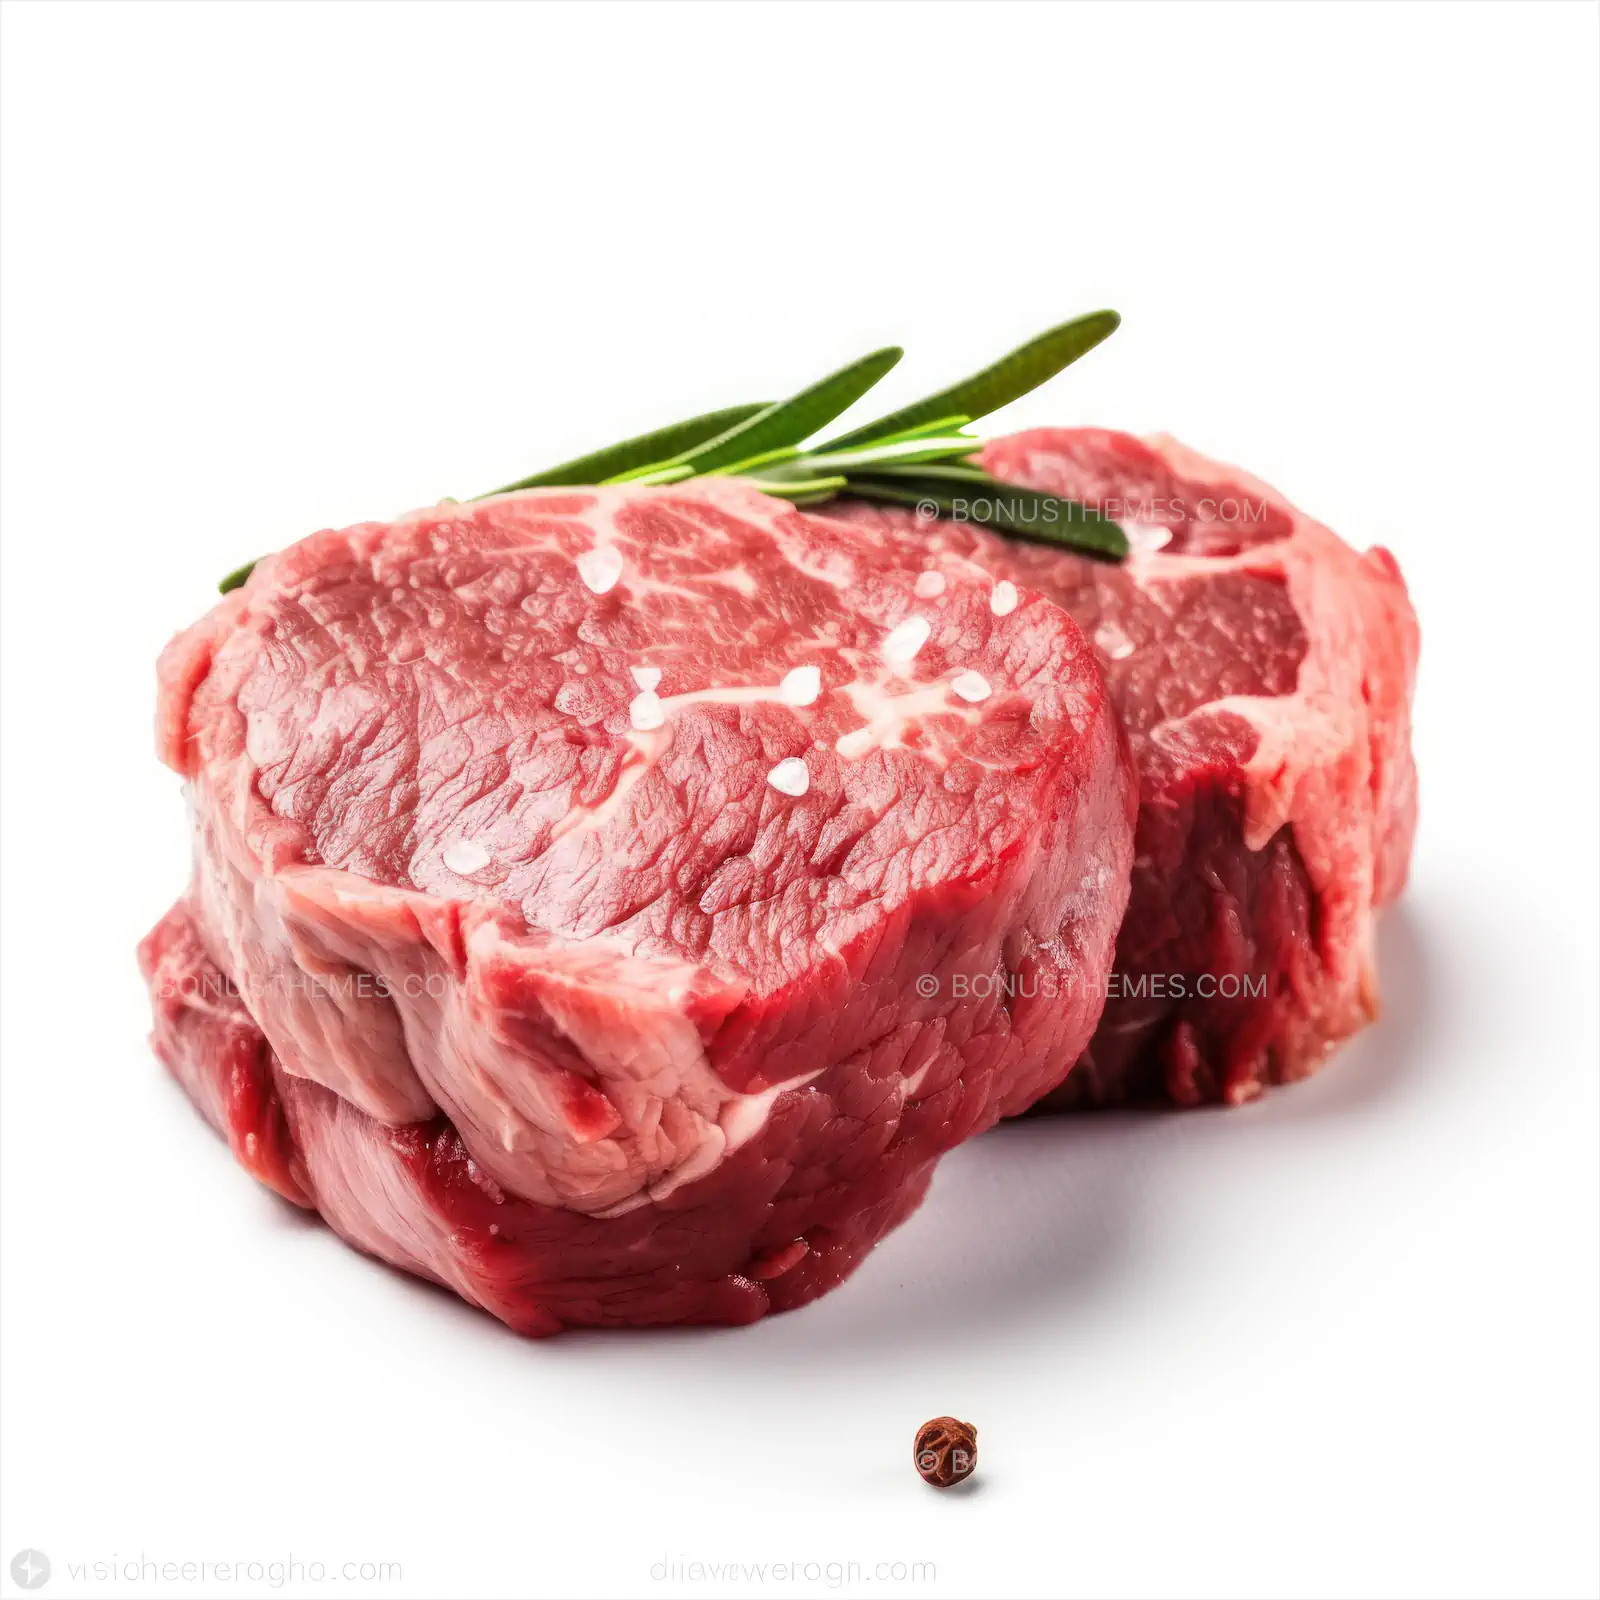 Raw beef steaks